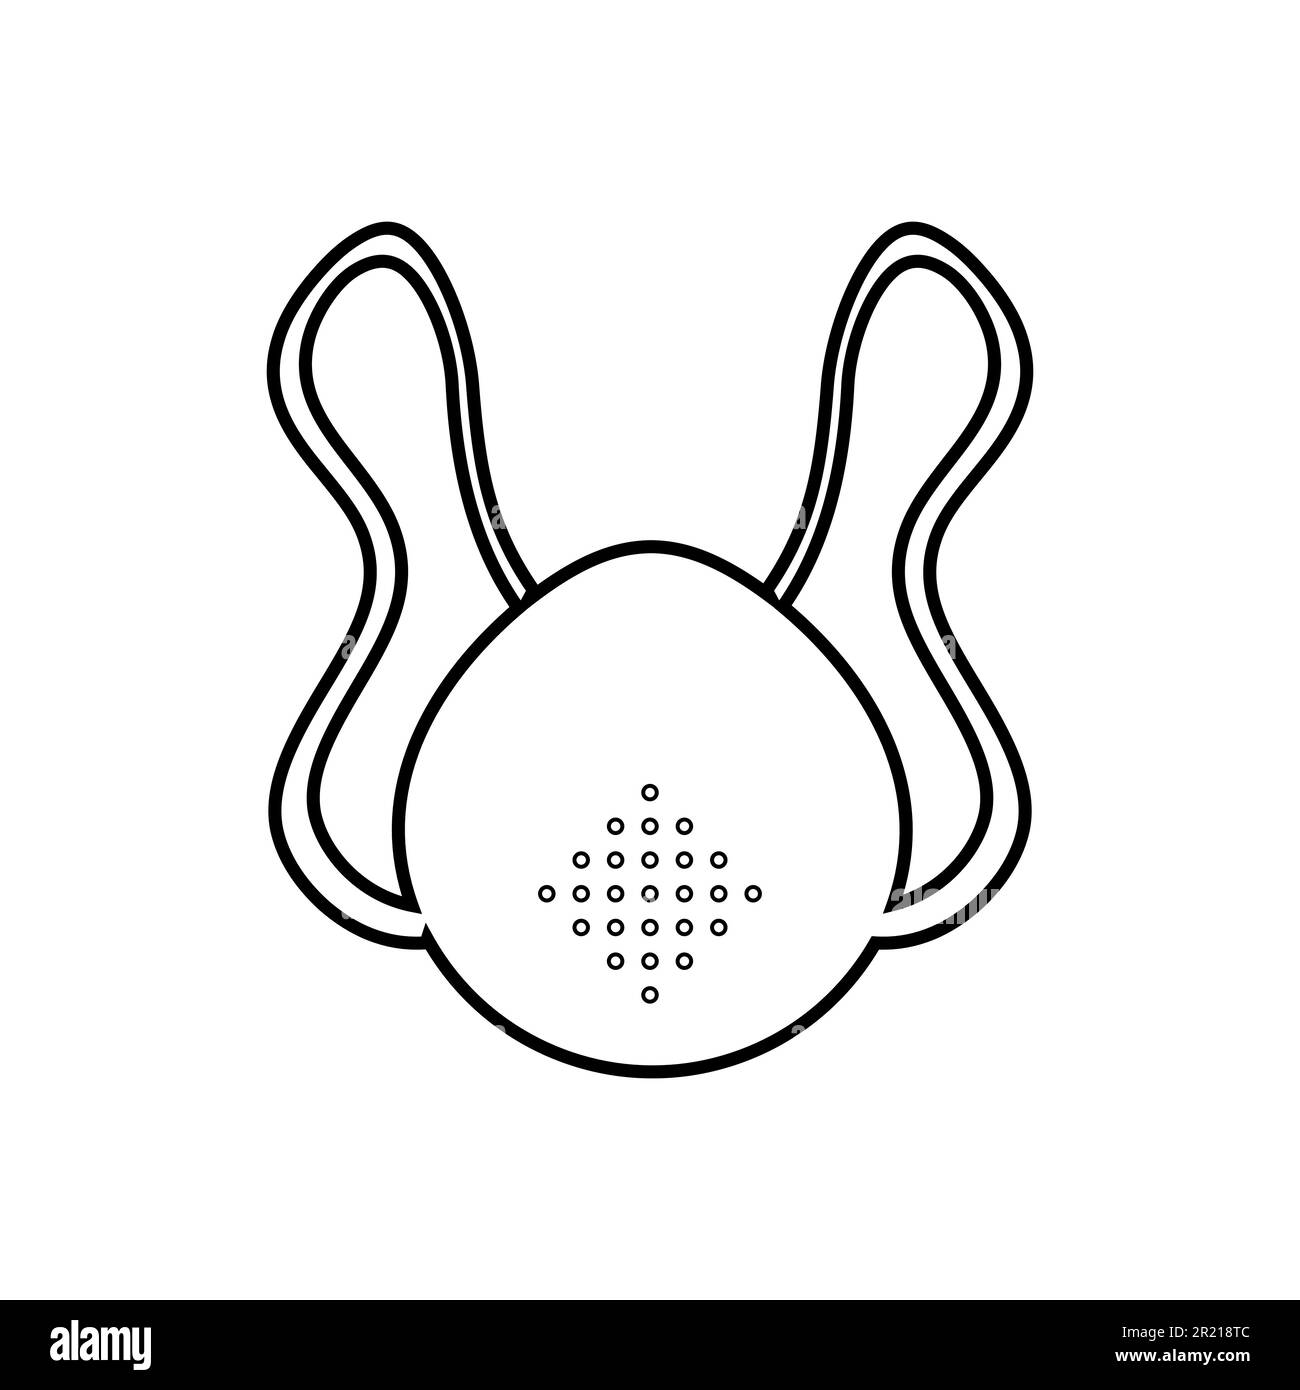 Icône noire et blanche d'un masque médical jetable en papier de gaze de protection avec un respirateur contre l'épidémie de coronavirus 019 du virus covid dangereux Illustration de Vecteur